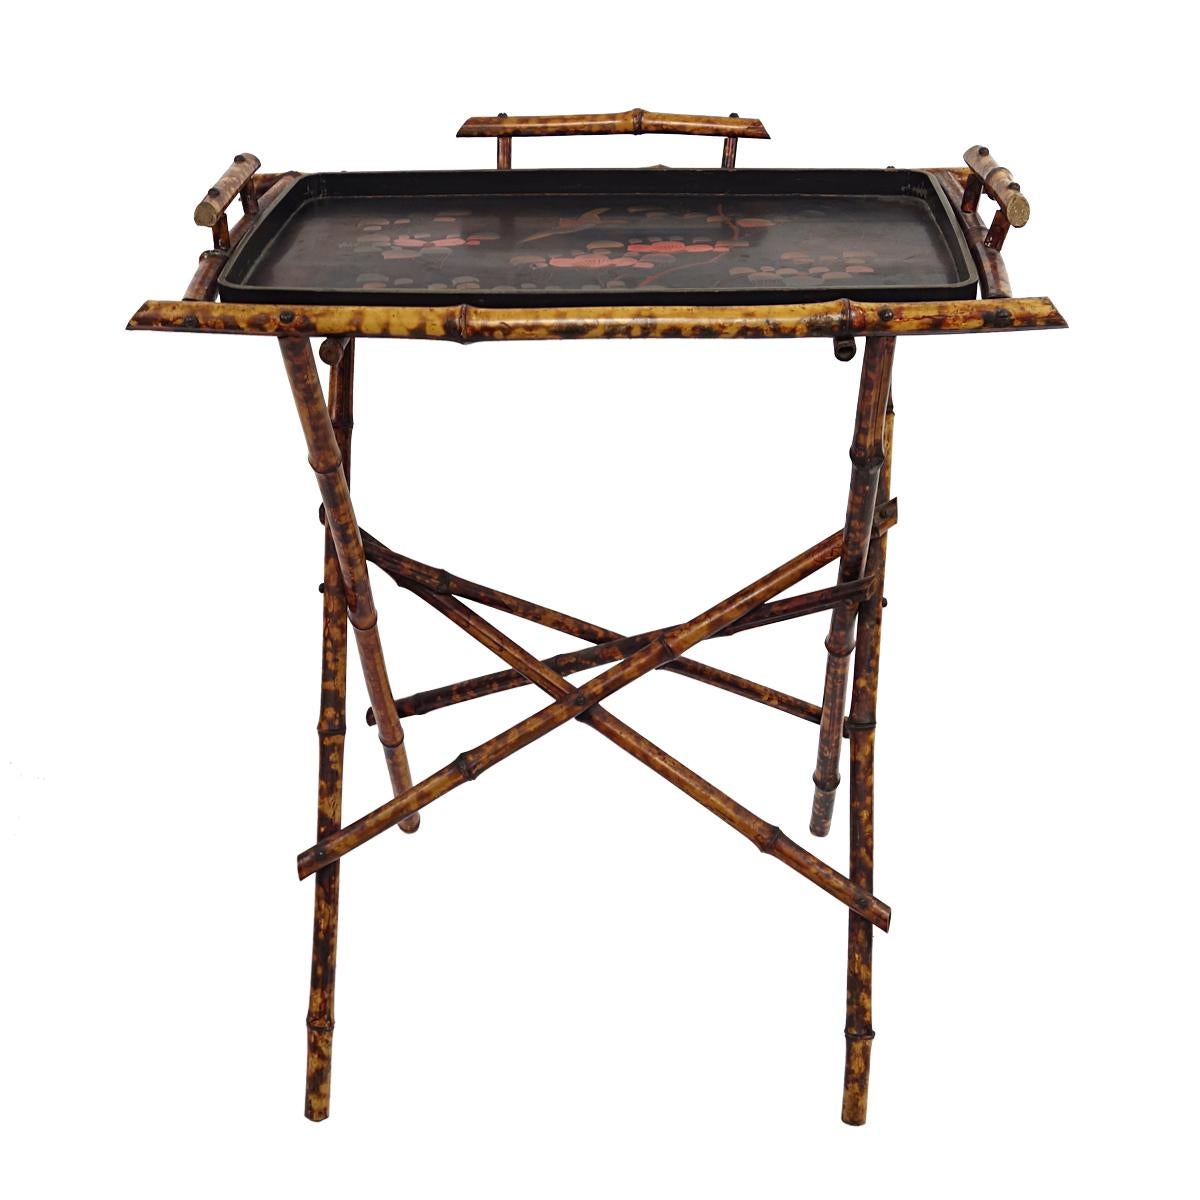 Sehr raffinierter Tabletttisch mit abnehmbarem Tablett orientalischer Herkunft, wahrscheinlich aus China der 1920er Jahre.

Der Rahmen sieht angenehm zerbrechlich aus und ist aus Bambus gefertigt. Das Tablett besteht aus lackiertem Holz und ist